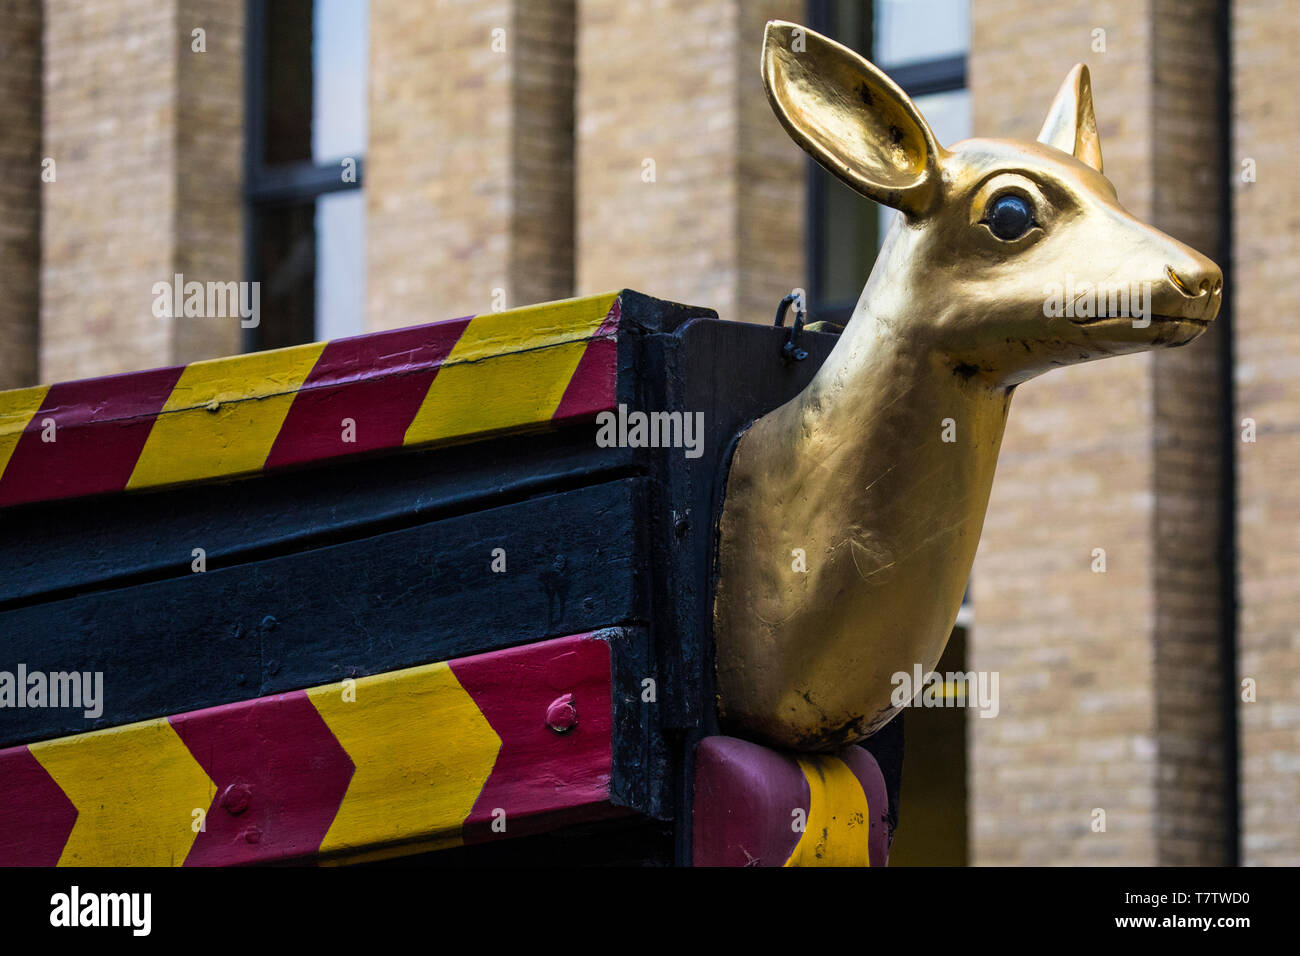 Der geschnitzte Galionsfigur einer Hirschkuh auf der Nachbildung der Golden Hind galleon Schiff in London. Das Schiff ist für ihre Umrundung des Globus in t bekannt Stockfoto